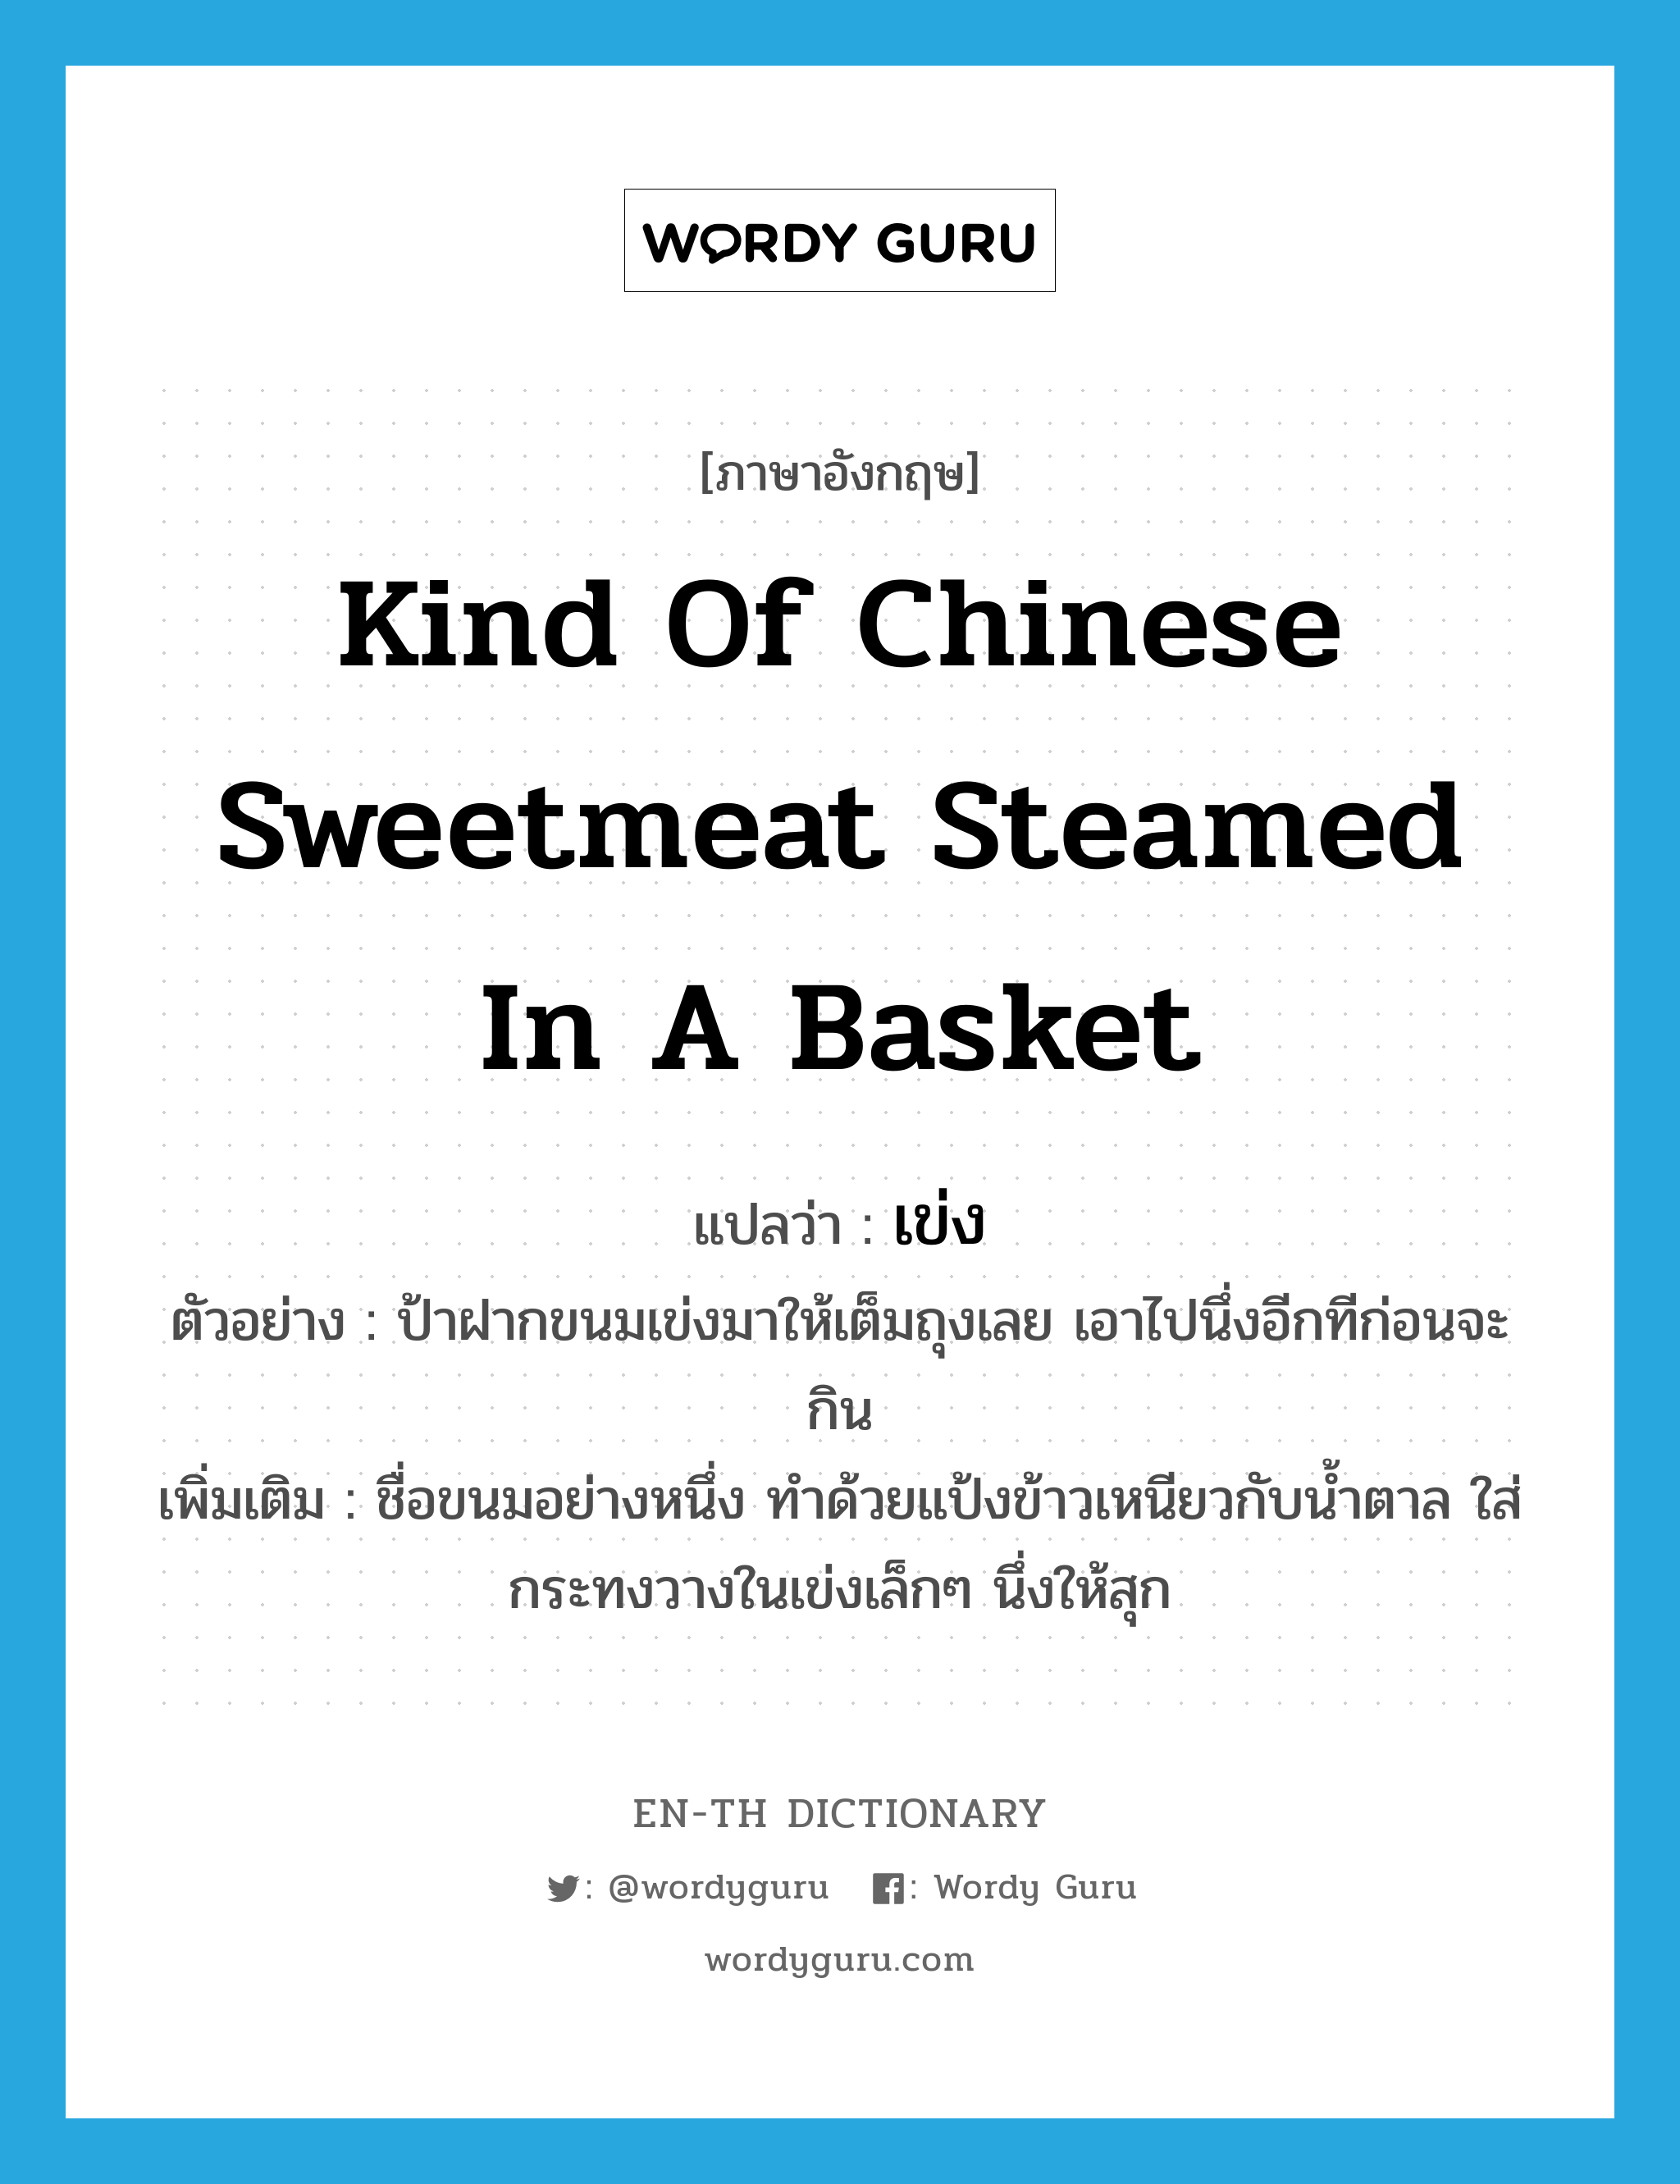 kind of Chinese sweetmeat steamed in a basket แปลว่า?, คำศัพท์ภาษาอังกฤษ kind of Chinese sweetmeat steamed in a basket แปลว่า เข่ง ประเภท N ตัวอย่าง ป้าฝากขนมเข่งมาให้เต็มถุงเลย เอาไปนึ่งอีกทีก่อนจะกิน เพิ่มเติม ชื่อขนมอย่างหนึ่ง ทำด้วยแป้งข้าวเหนียวกับน้ำตาล ใส่กระทงวางในเข่งเล็กๆ นึ่งให้สุก หมวด N